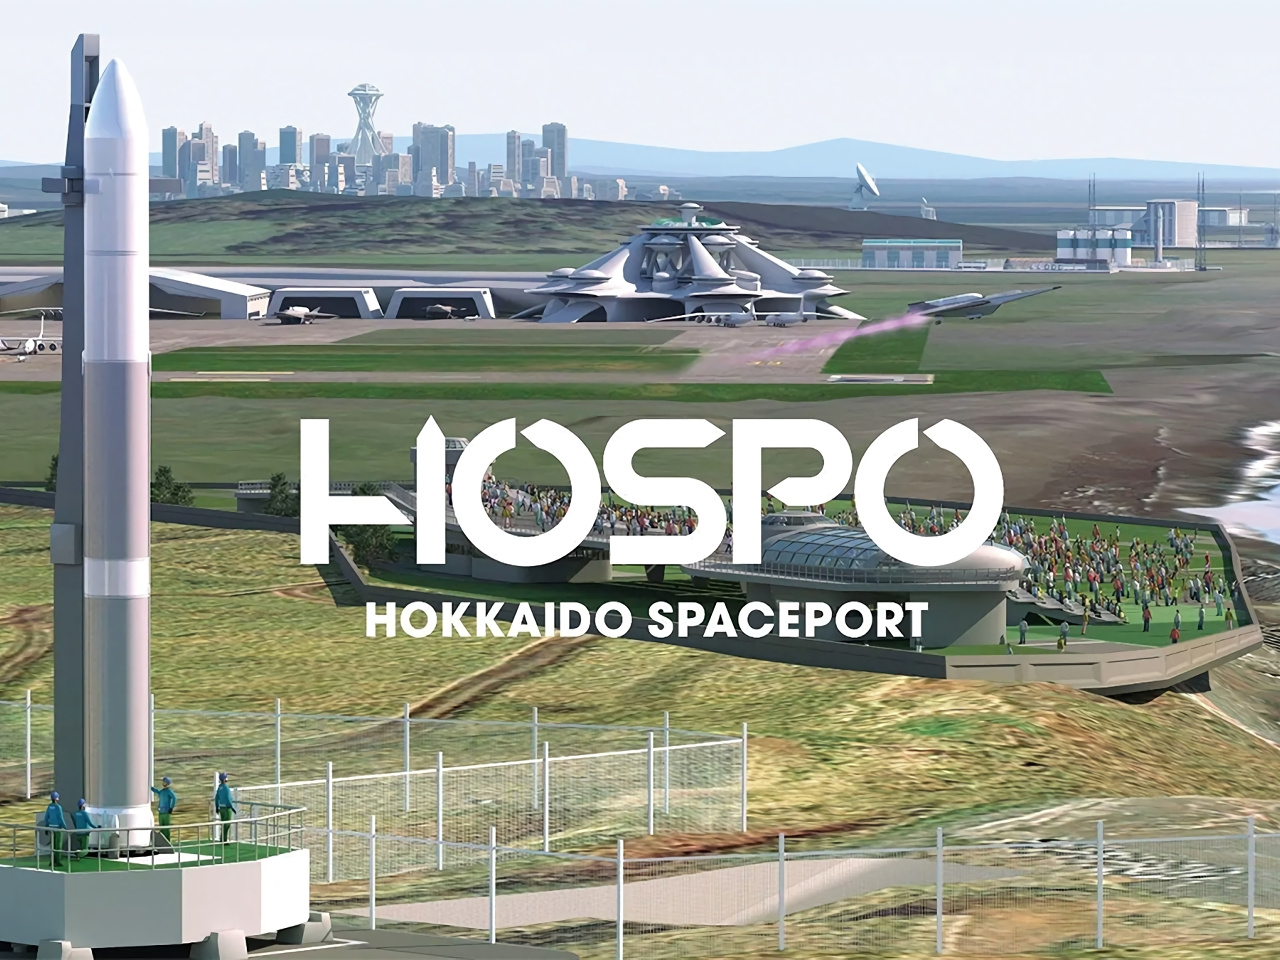 宇宙港「北海道スペースポート」に企業版ふるさと納税で3億円--累計で28億円